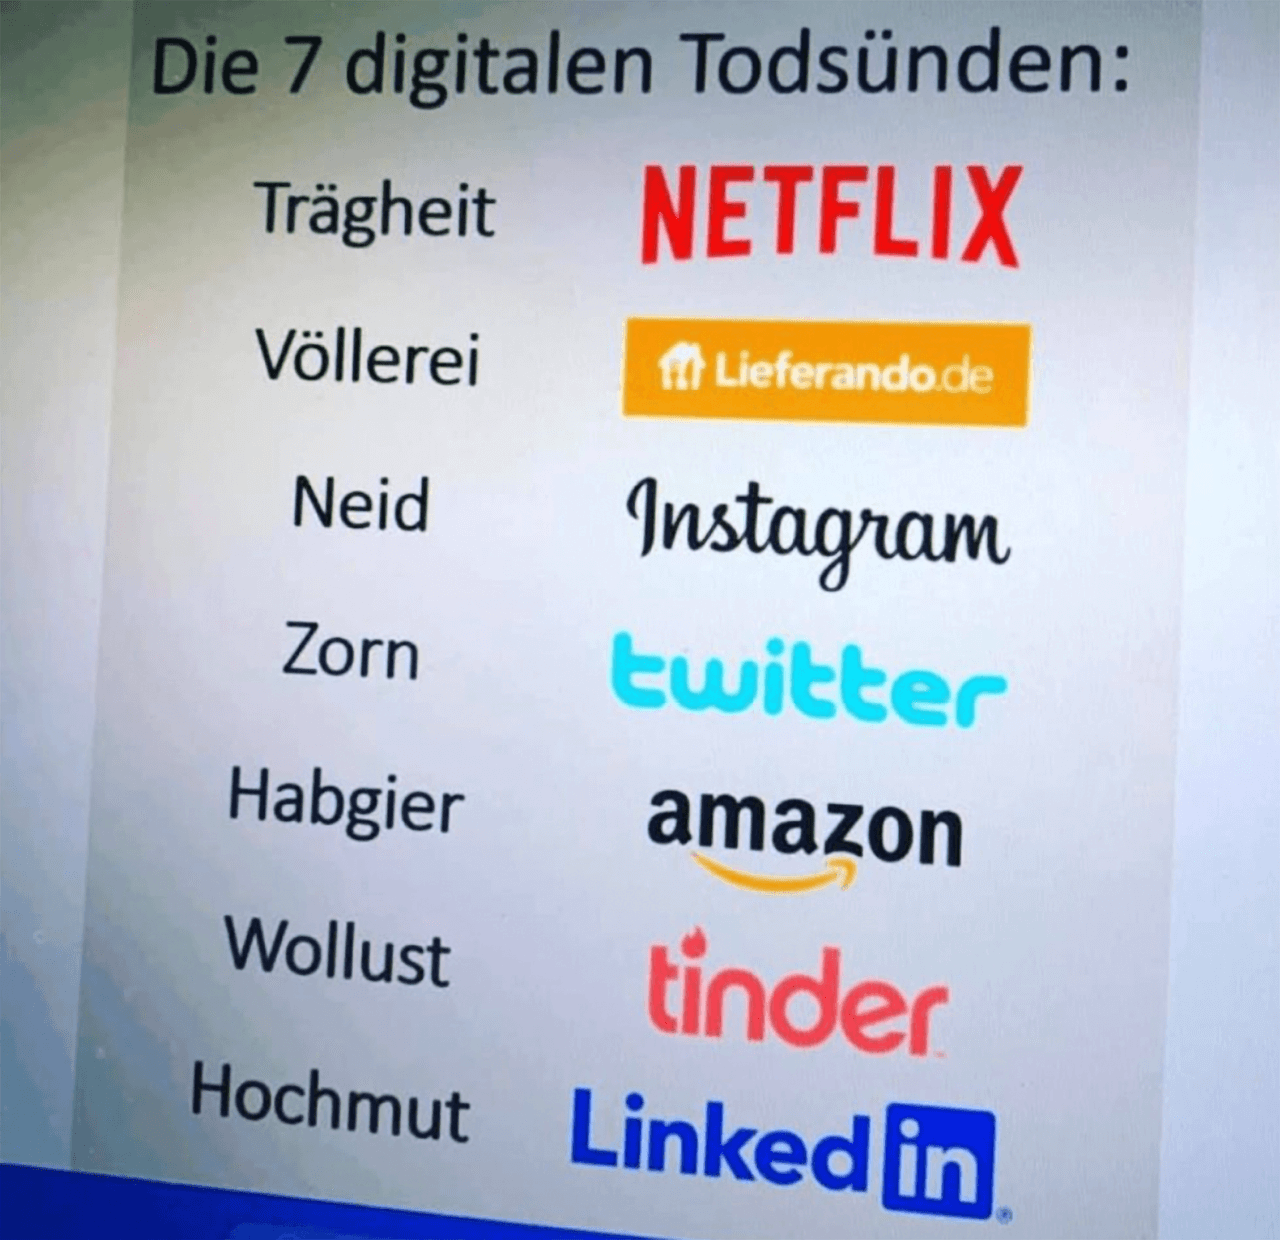 Bild der sieben digitalen Todsünden: 1. Trägheit = Netflix, 2. Völlerei = Lieferando.de, 3. Neid = Instagram, 4. Zorn = Twitter, 5. Habgier = Amazon, 6. Wollust = Tinder, 7. Hochmut = LinkedIn.